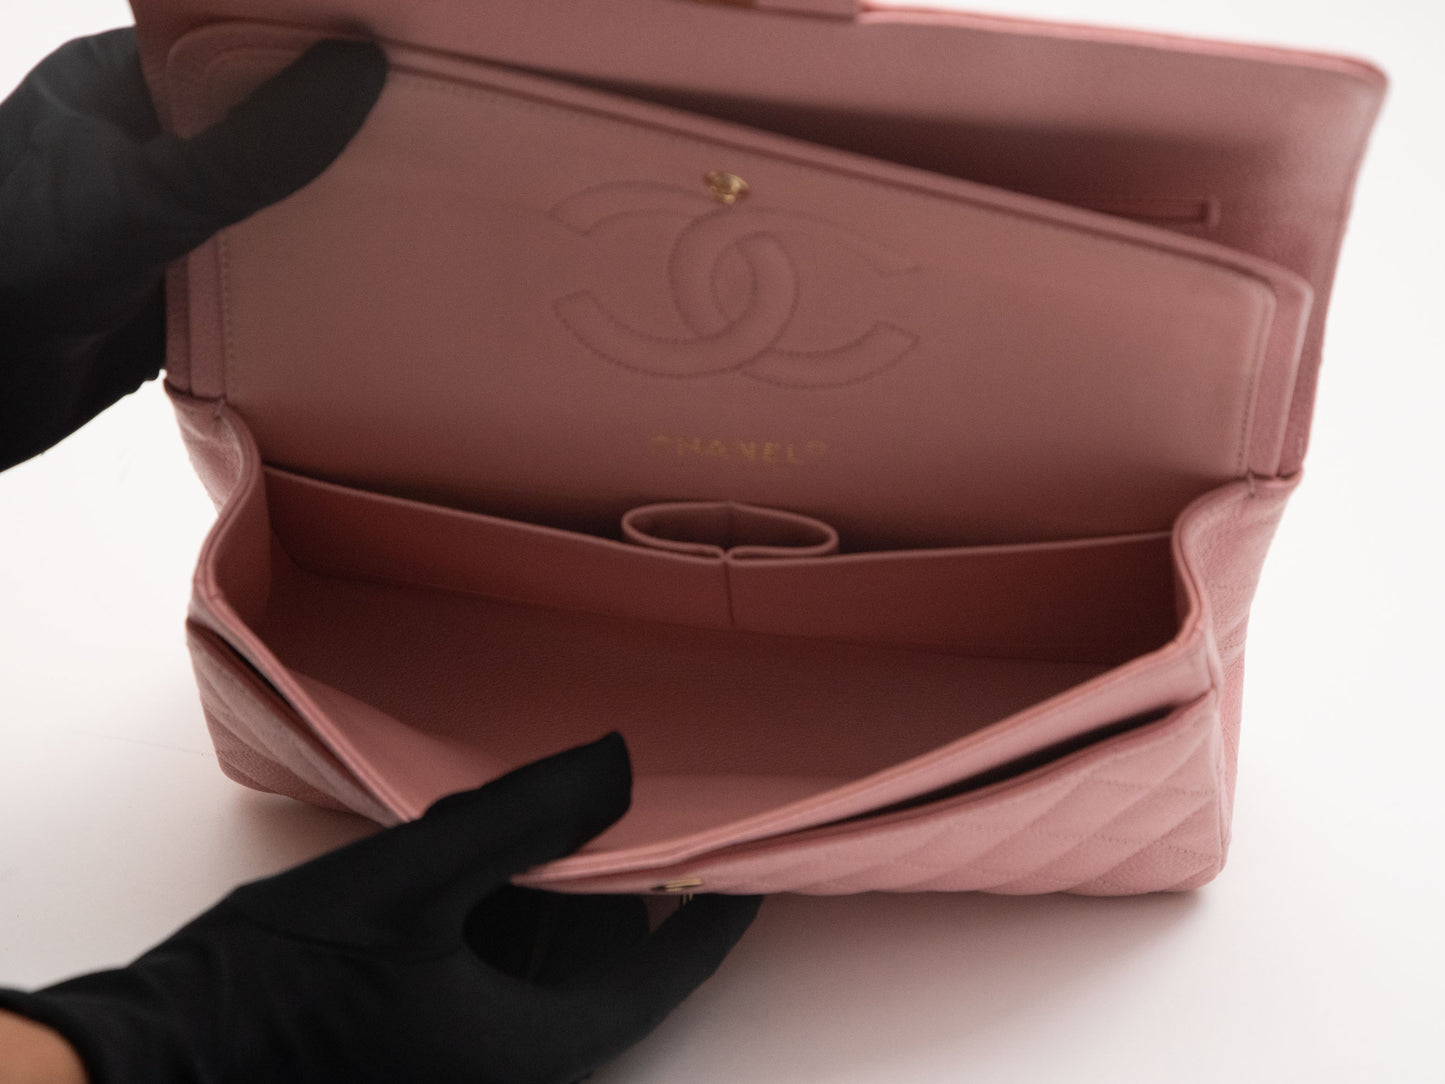 Chanel Classic Flap Matelasse Chain Shoulder Bag Caviar Skin Pink Sakura Pink